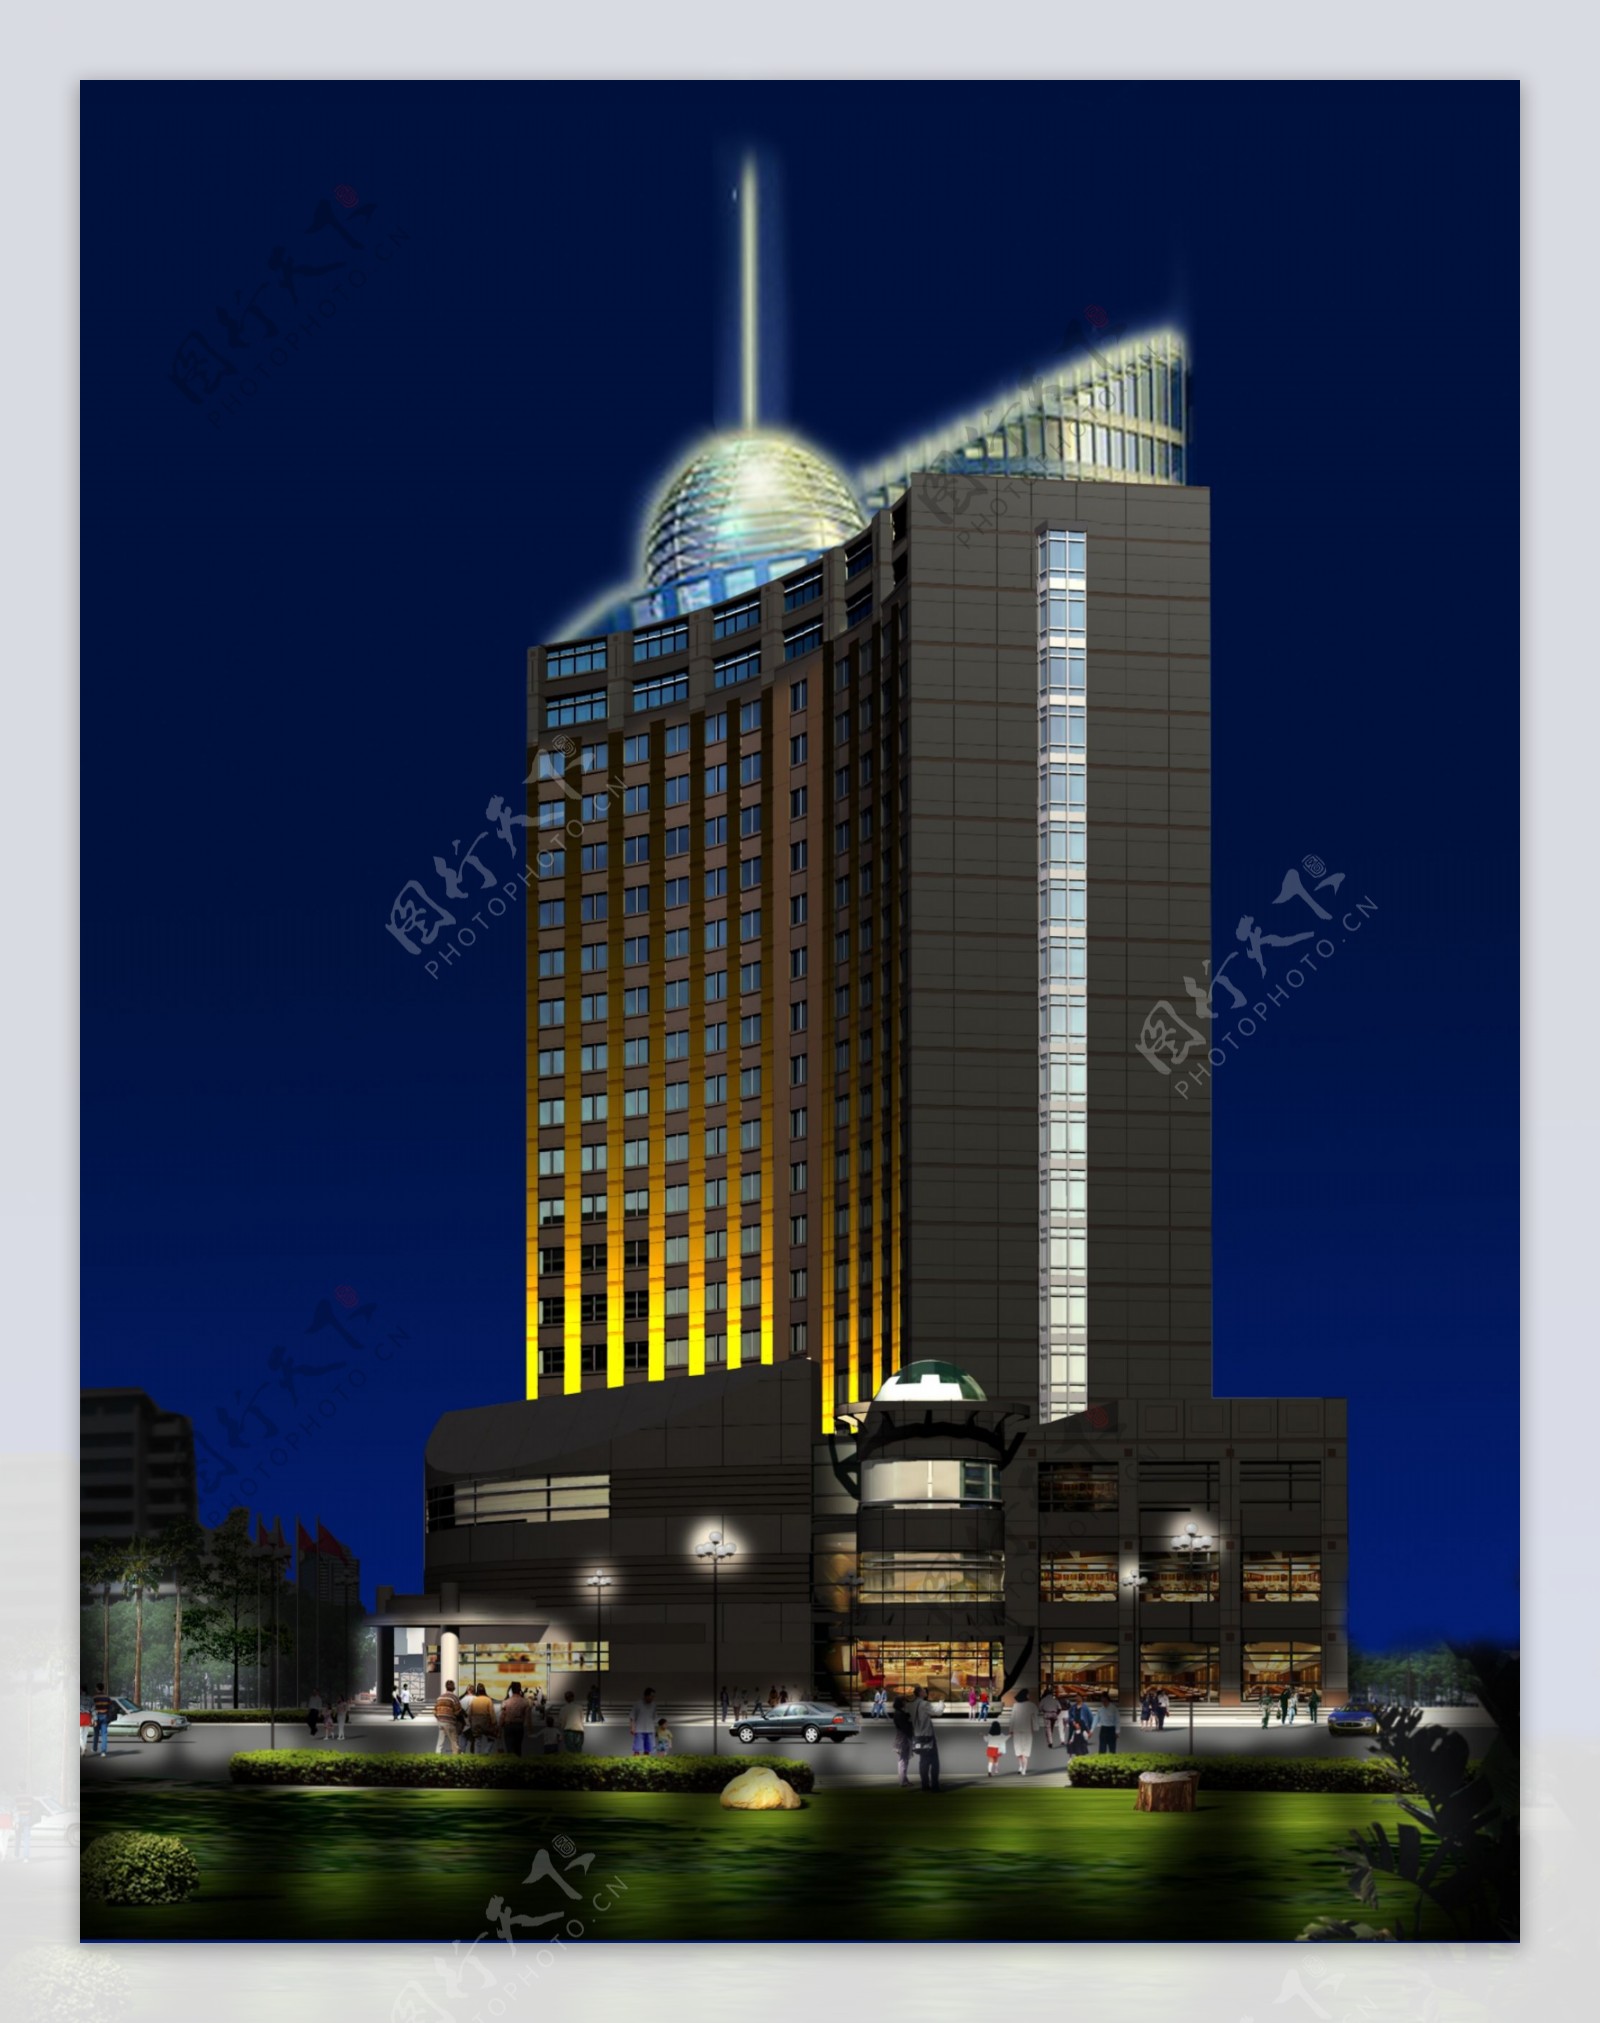 江南大酒店夜景室外景观照明效果图五星级大酒店图片